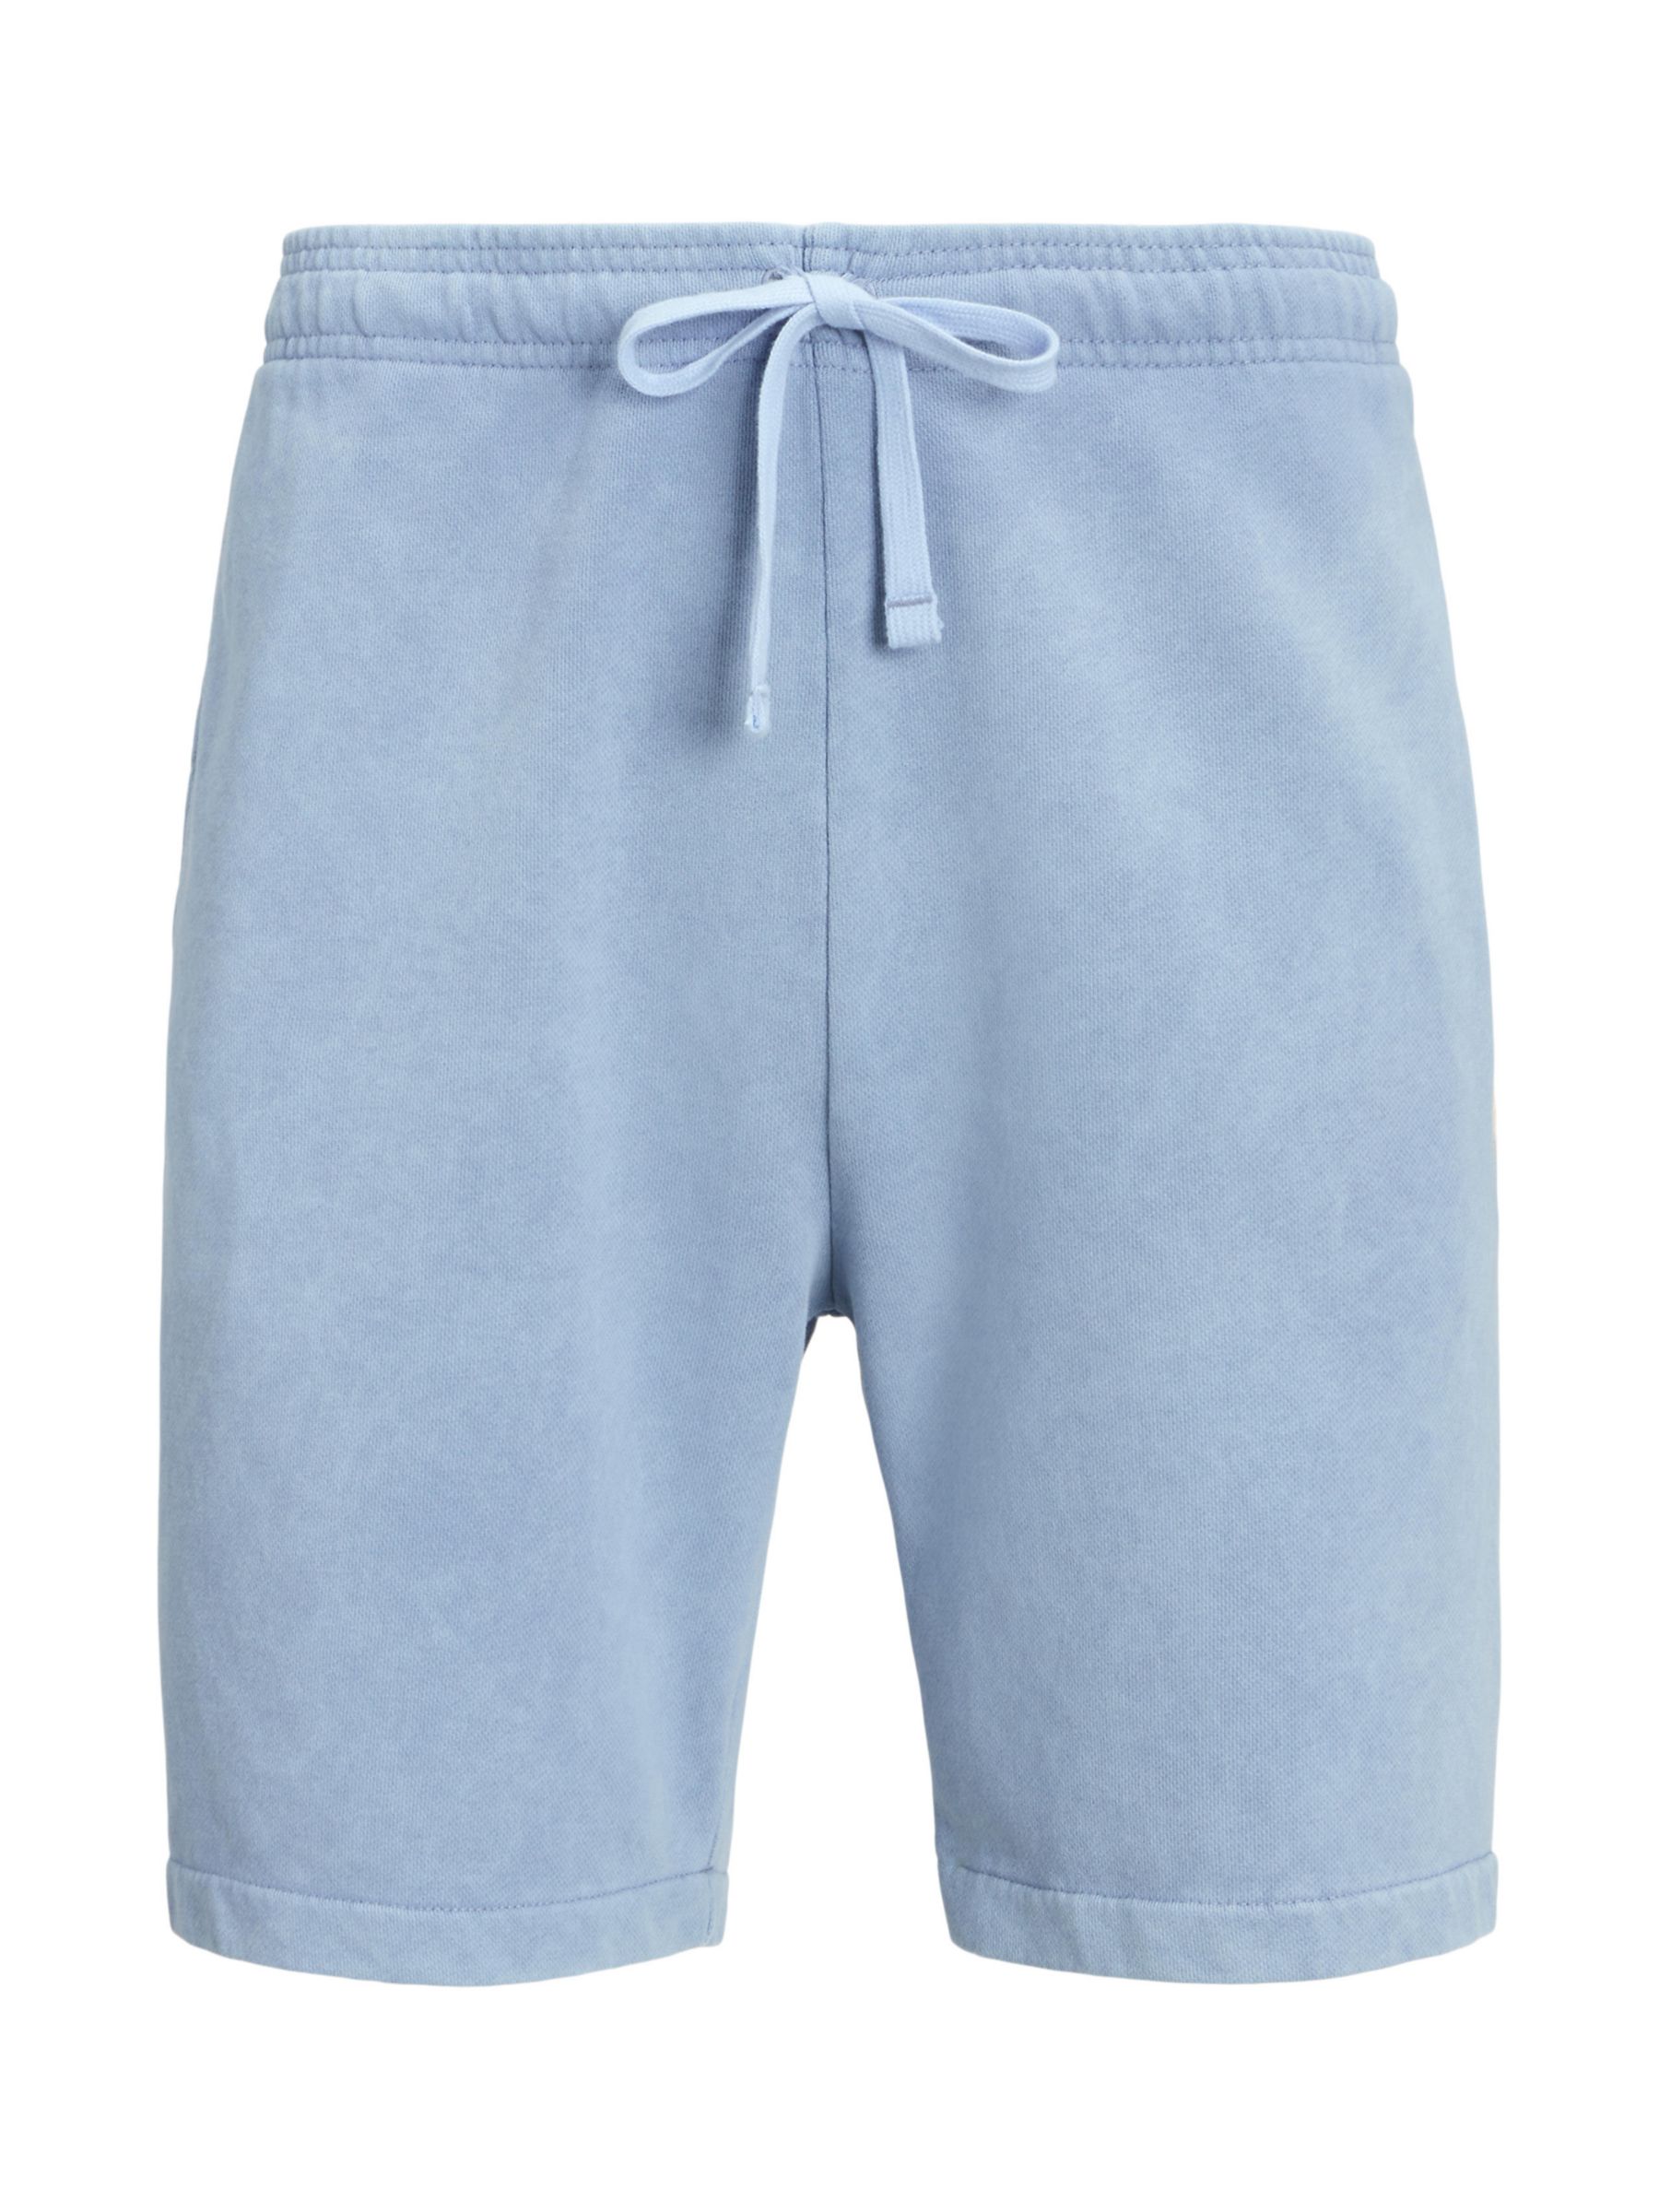 Buy Ralph Lauren Athletic Cotton Shorts, Channel Blue Online at johnlewis.com